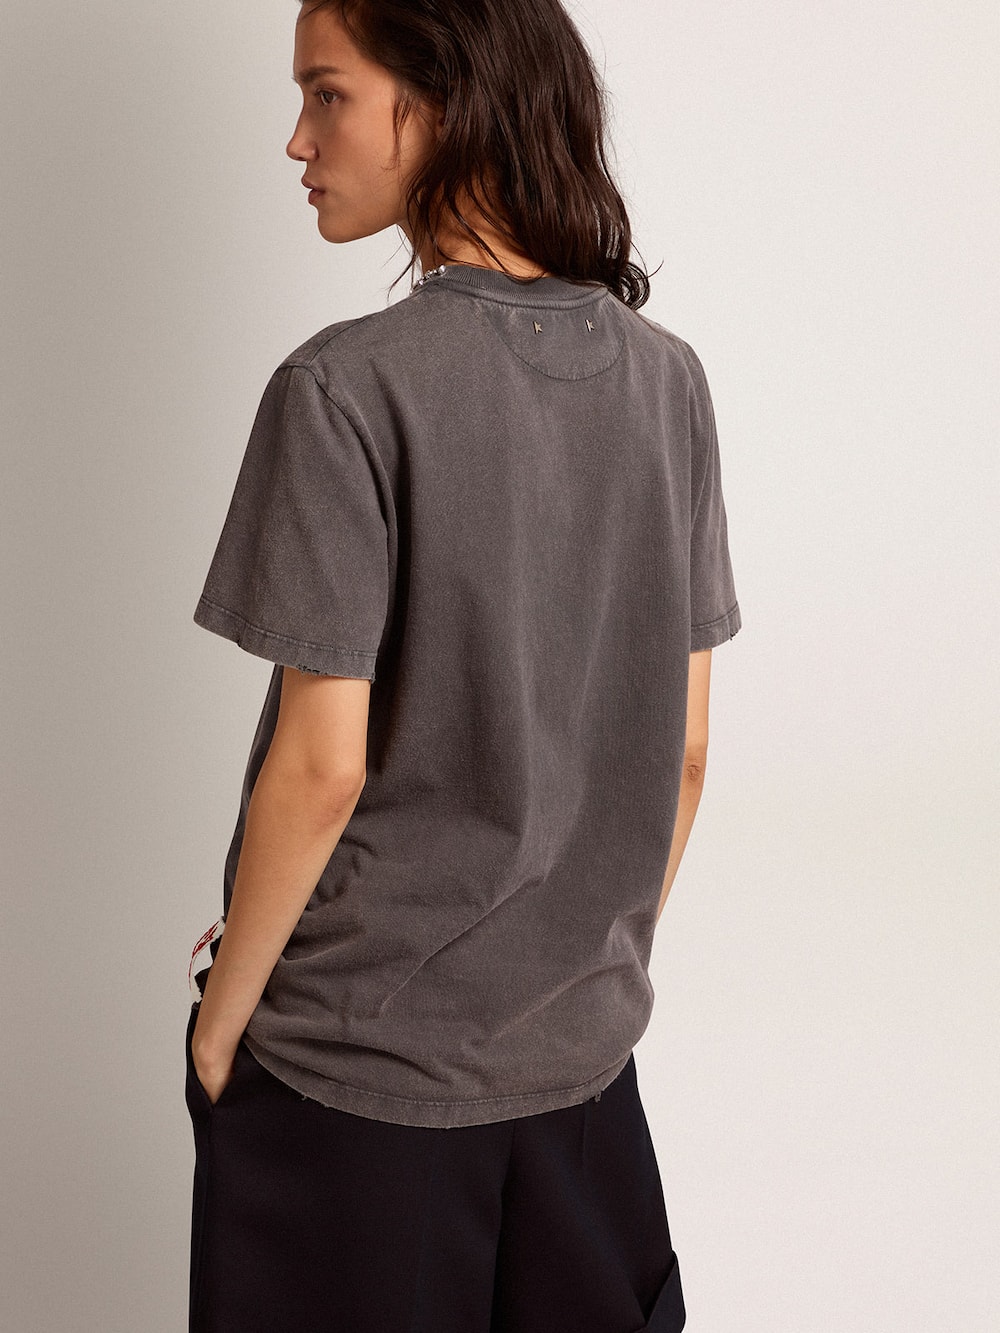 Golden Goose - T-shirt da donna color grigio antracite e cristalli in 